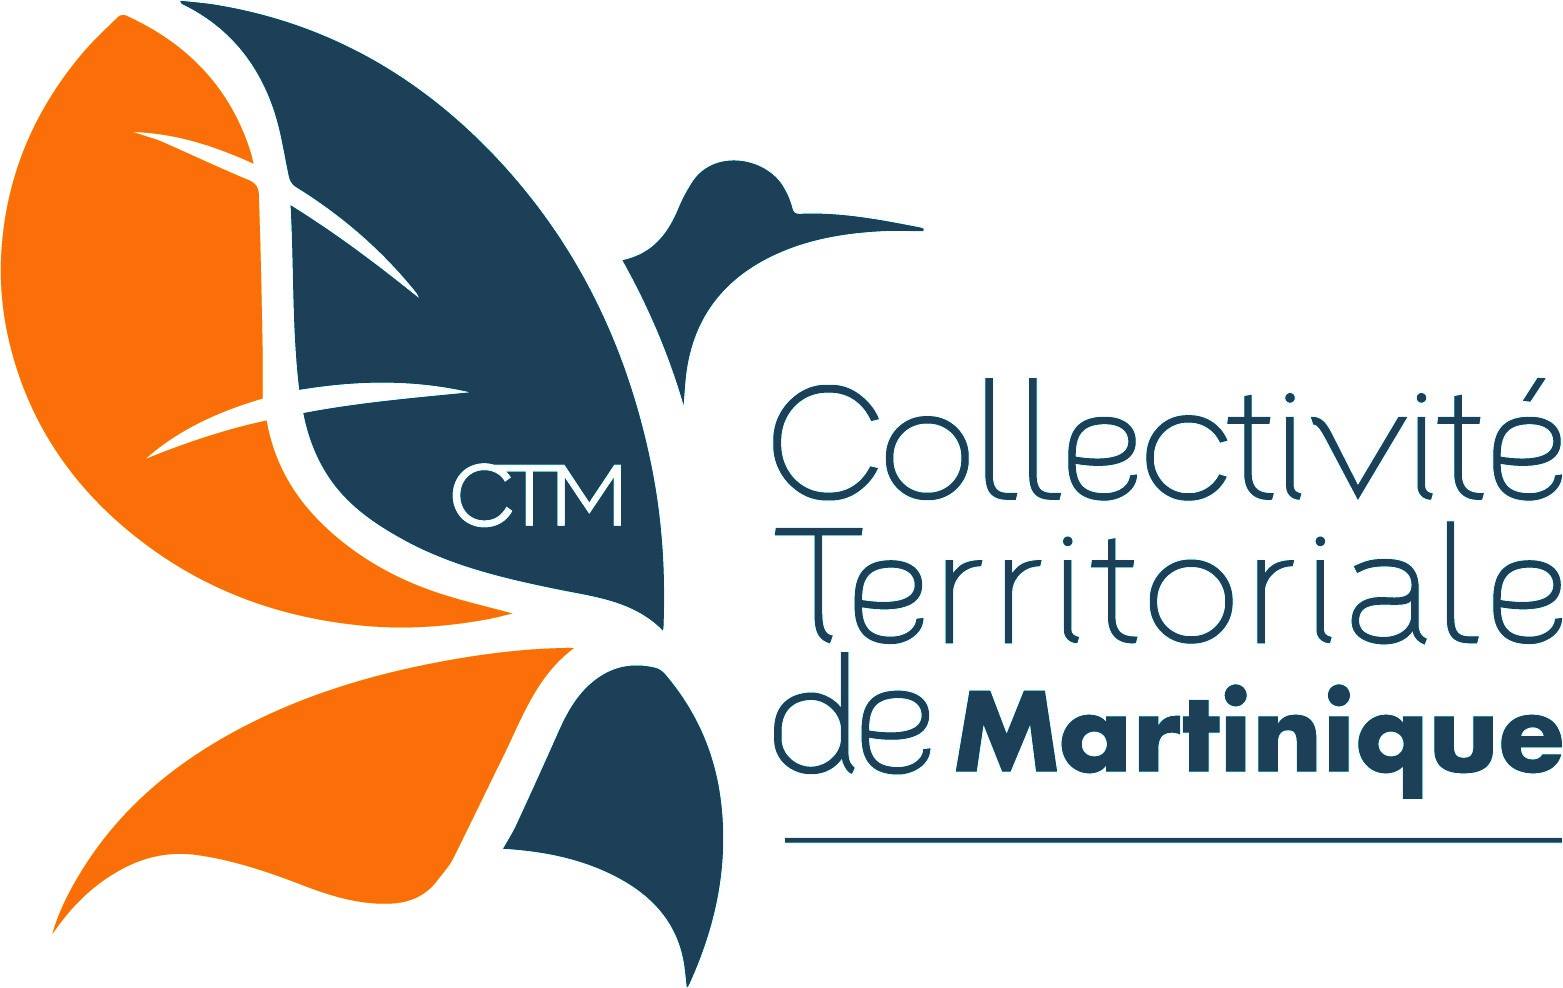 Martinique: La Collectivité territoriale de Martinique a une nouvelle image